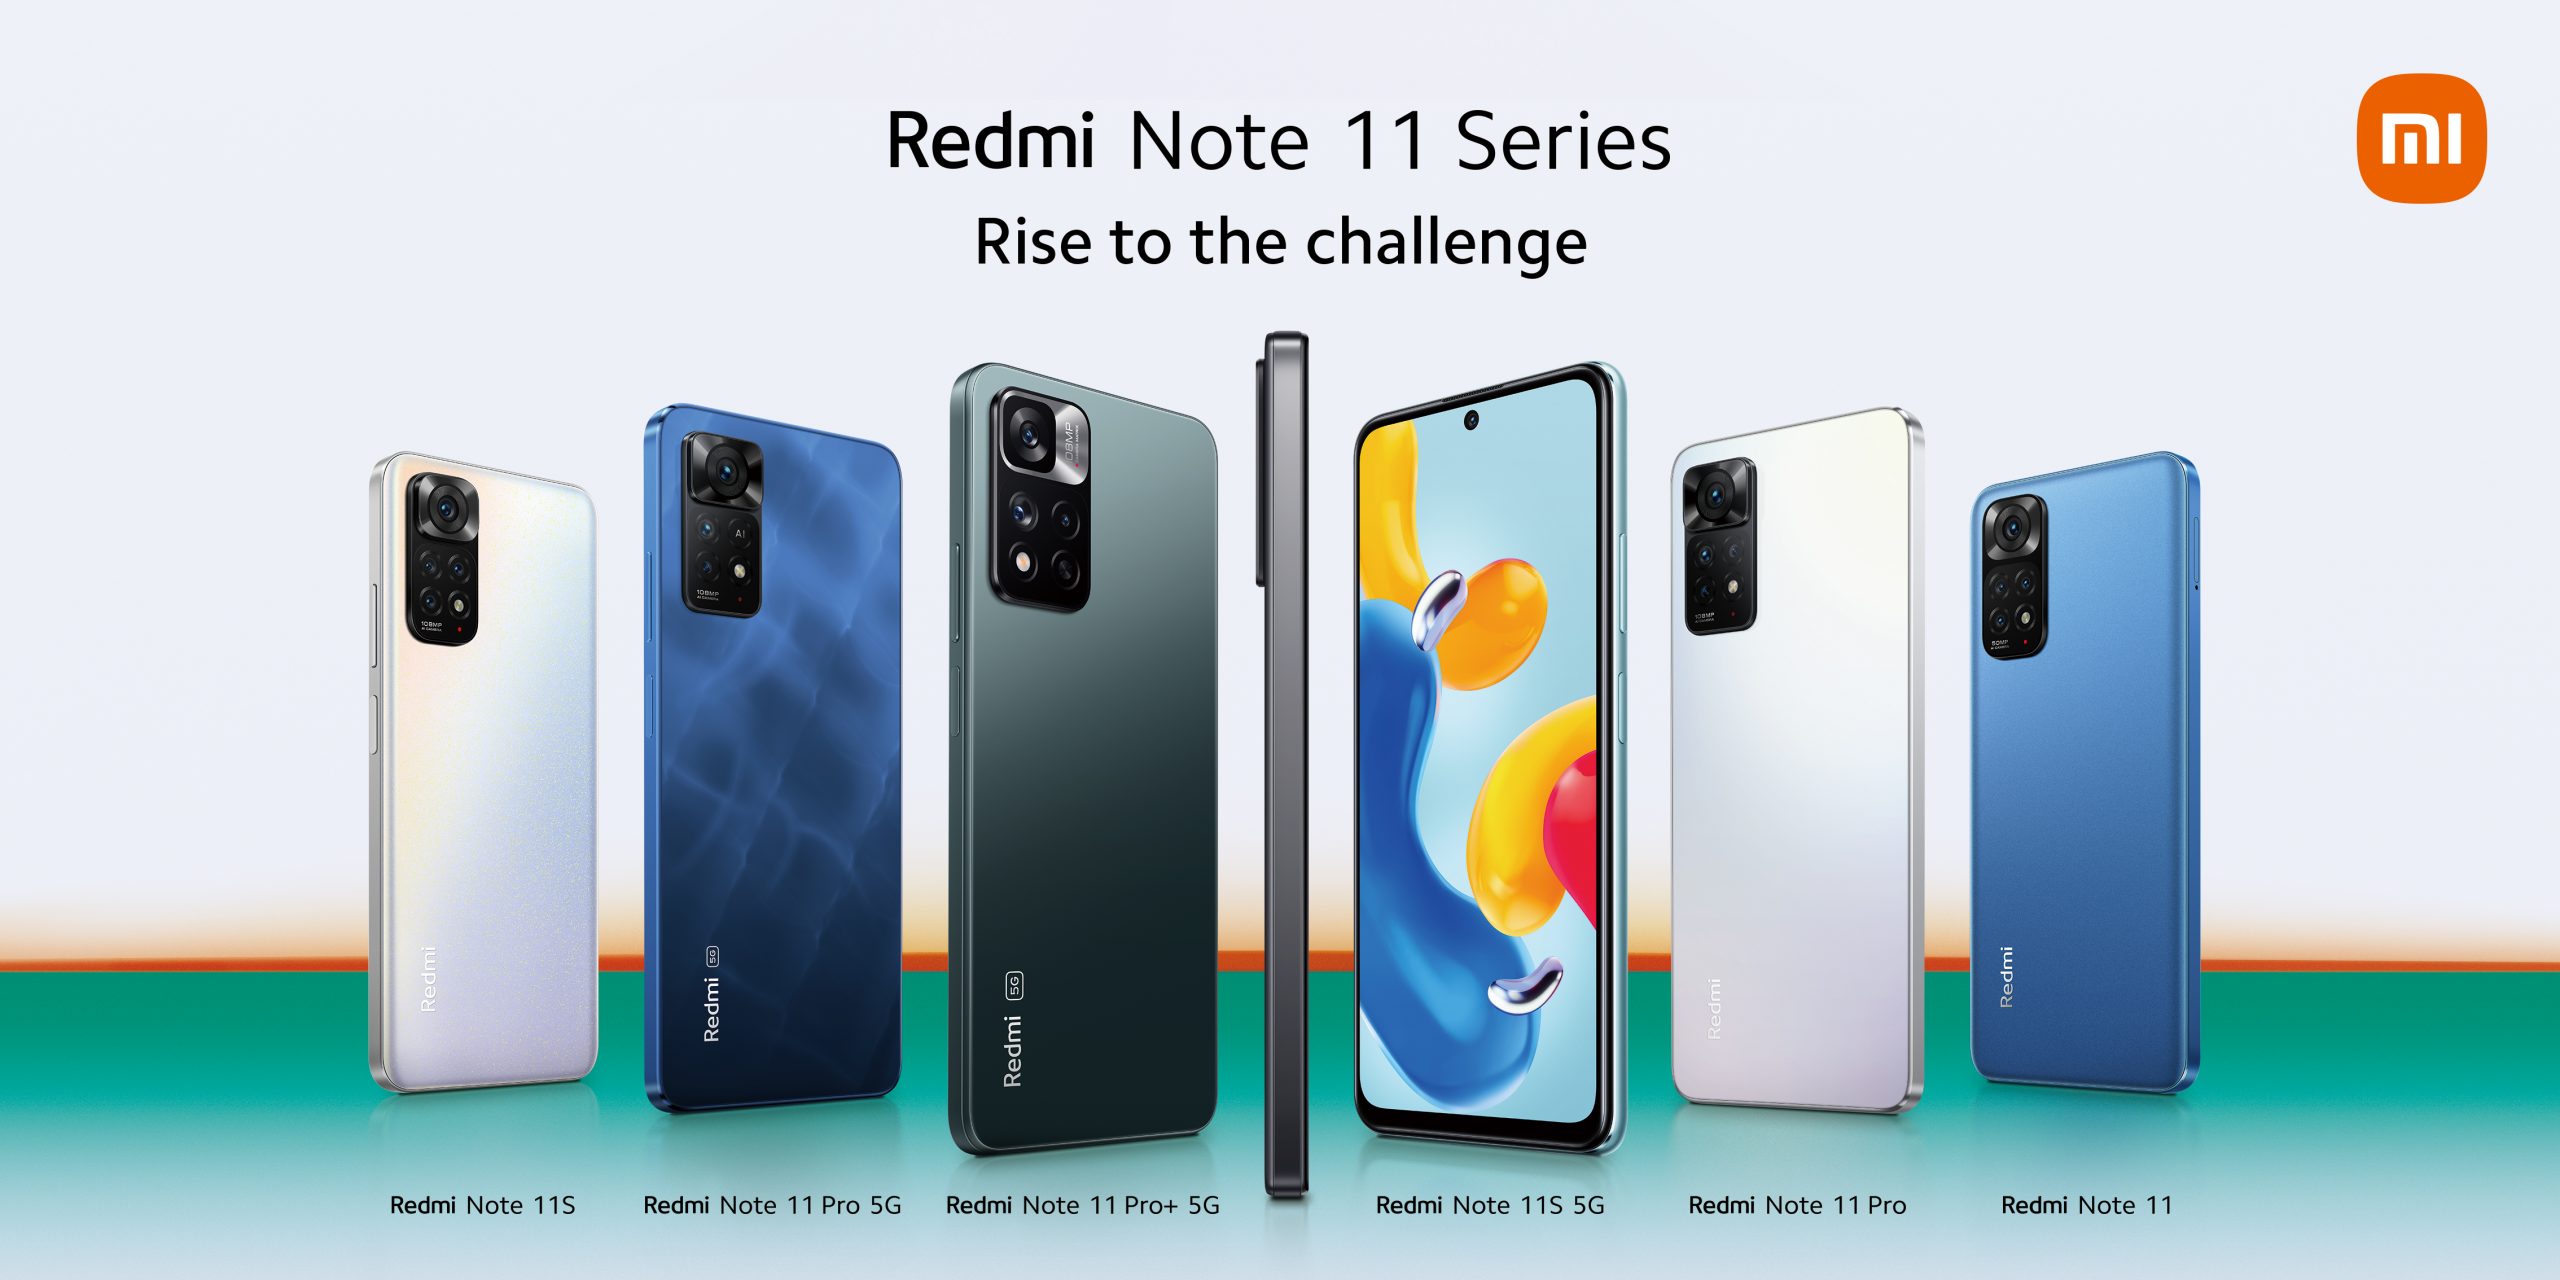 Saingan Baru Redmi Note 11 Series yang Hangat Hadir Dengan Spesifikasi Terbaik